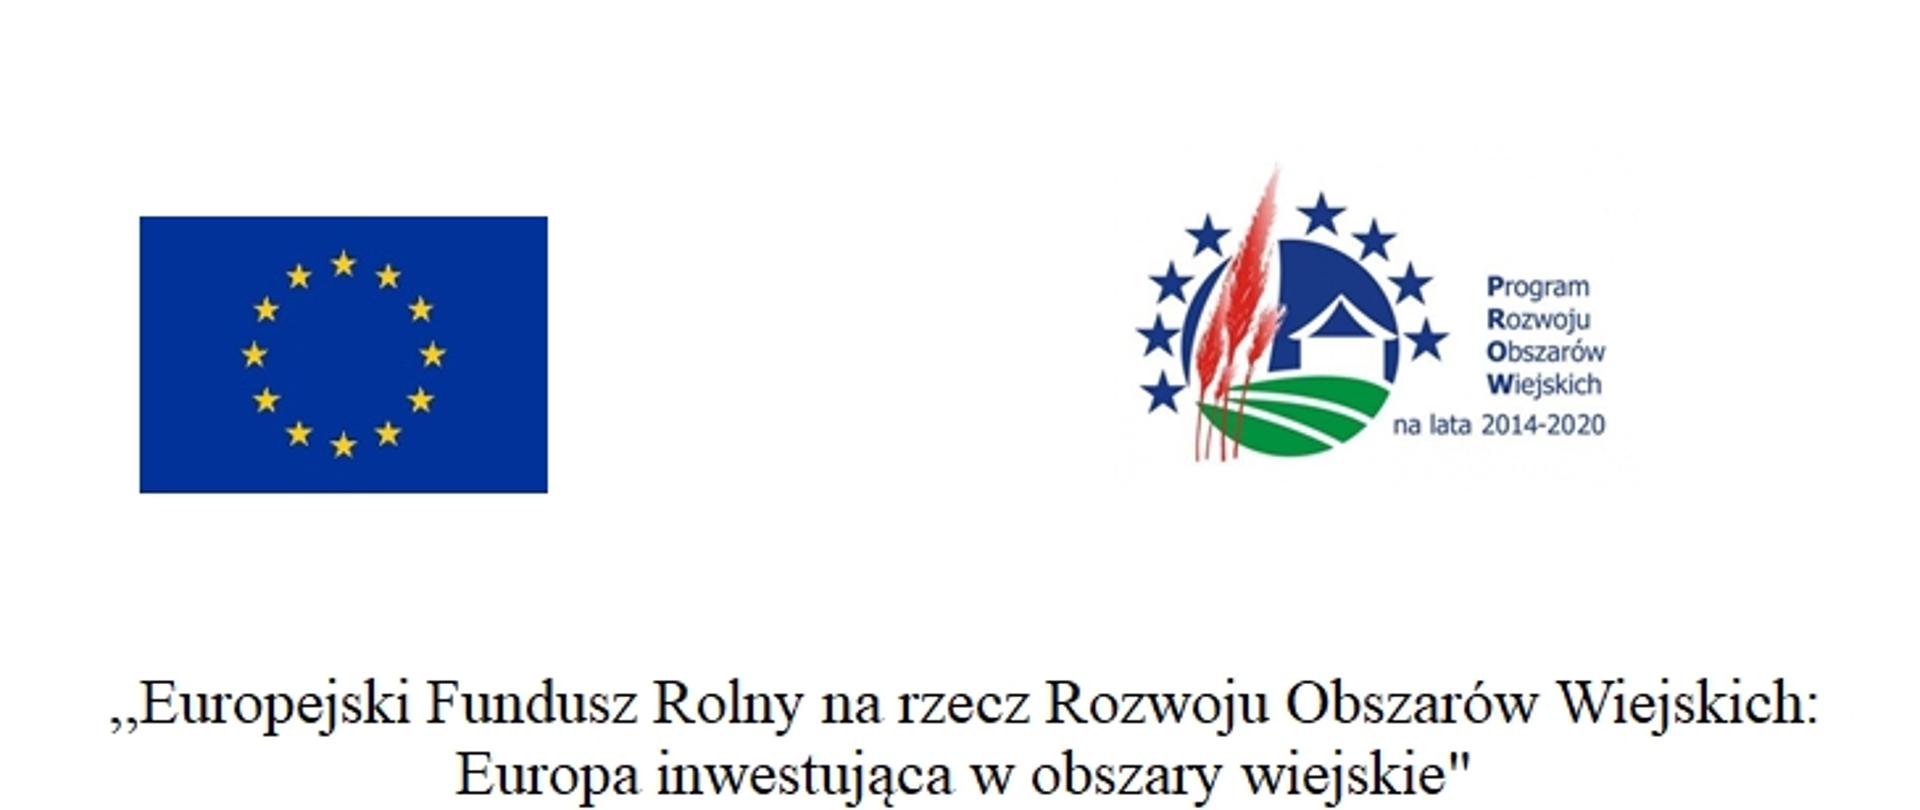 Logotypy UE i PROW